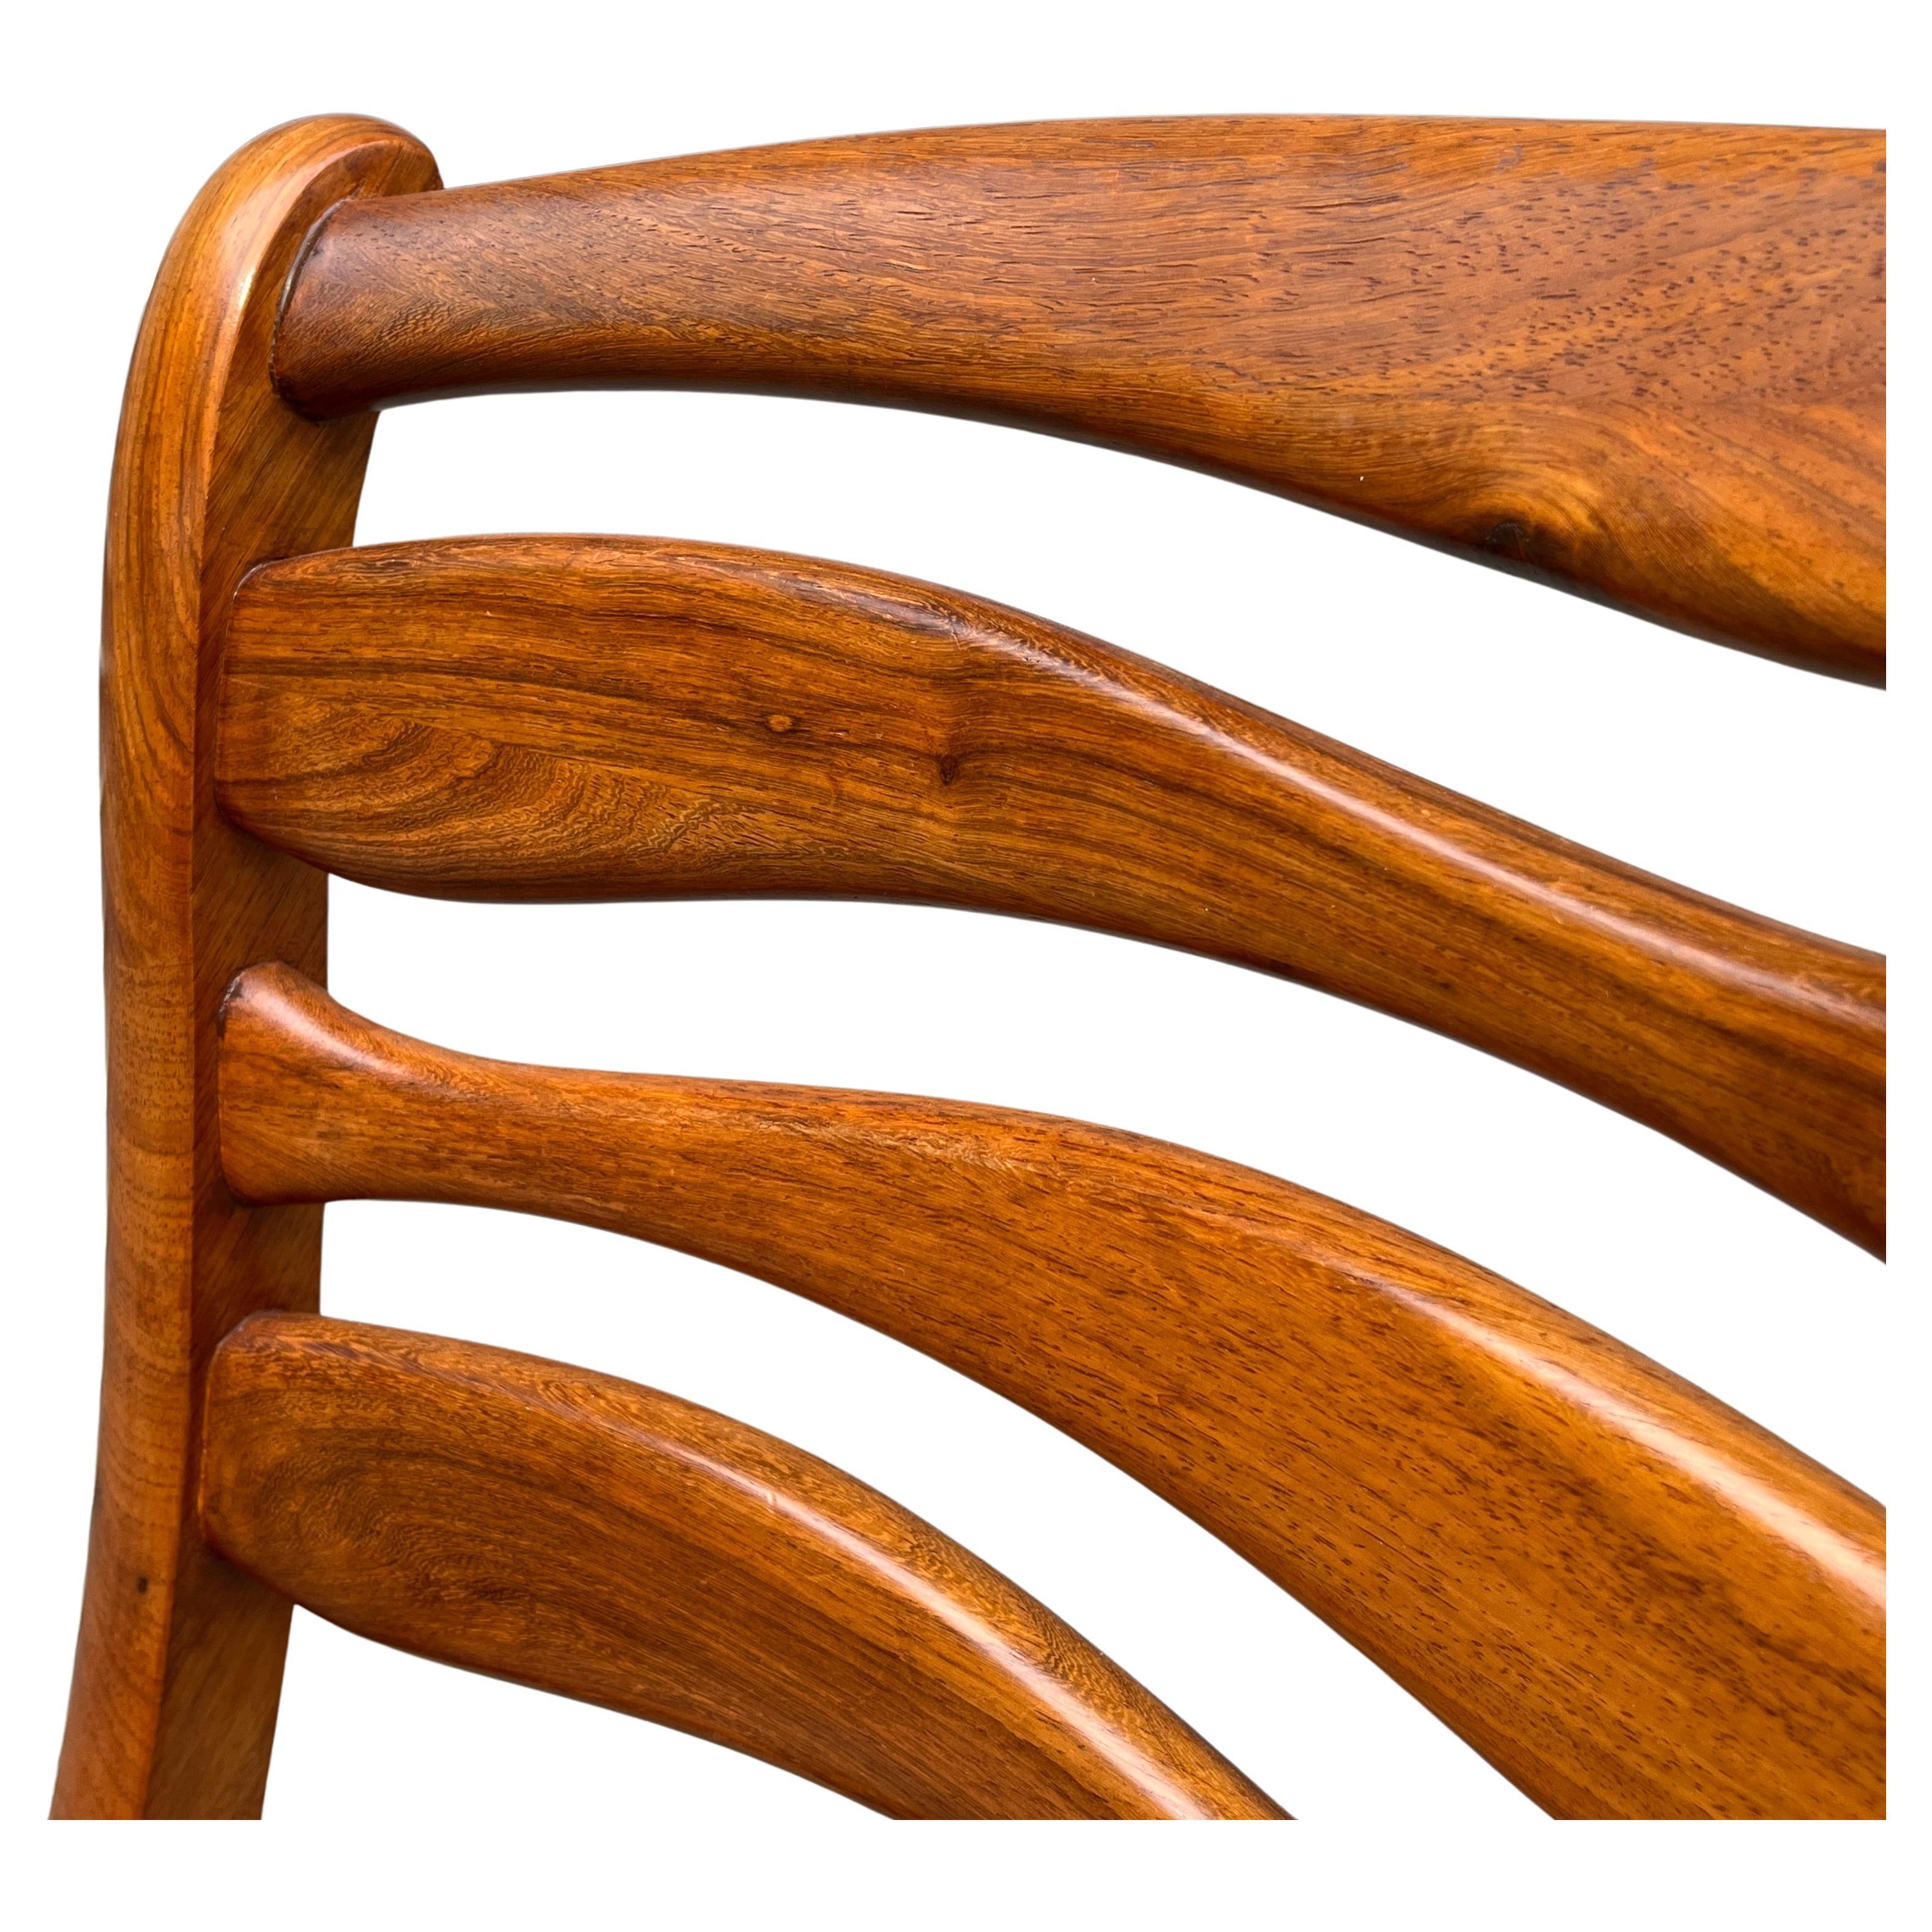 Schönes Set oder skulpturaler Esszimmerstuhl. Modernes Handwerk, das auf Form und Funktion achtet. Sehr komfortabel und langlebig. Holz unbekannt. Scheint aus Teakholz oder schwarzem Nussbaum zu sein.  Einzigartiges Set